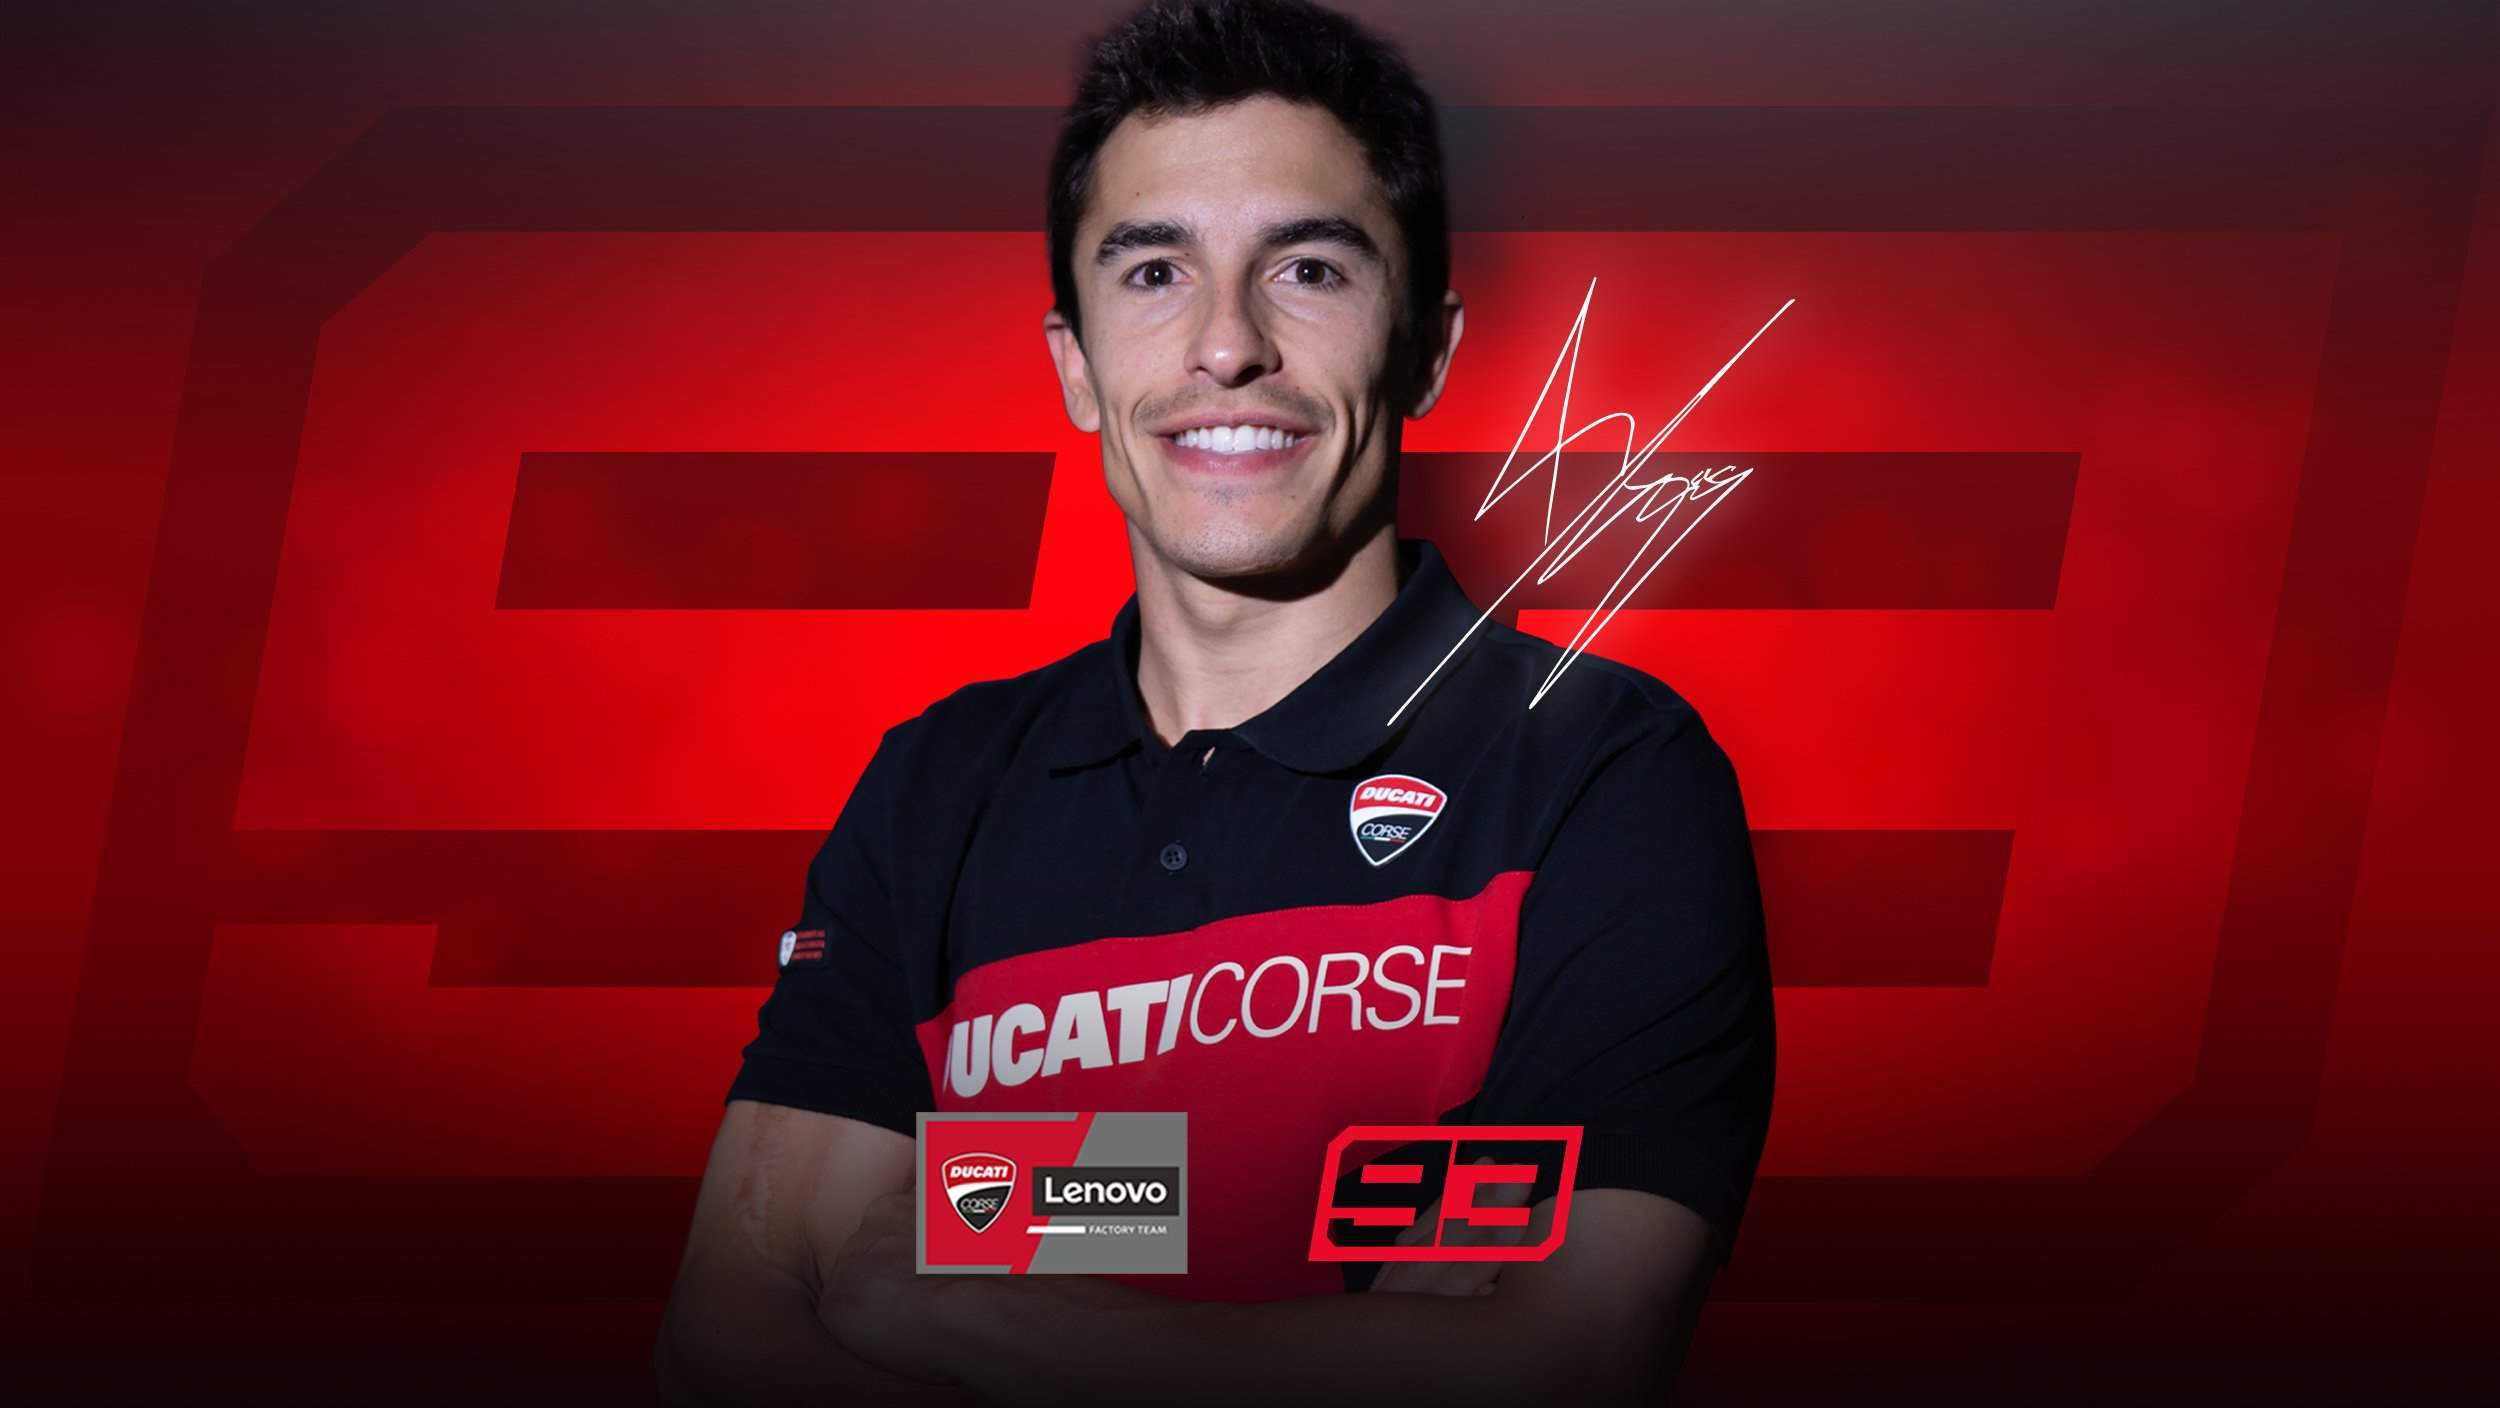 Ufficiale: Marquez dal 2025 affiancherà Bagnaia nel team Ducati Lenovo